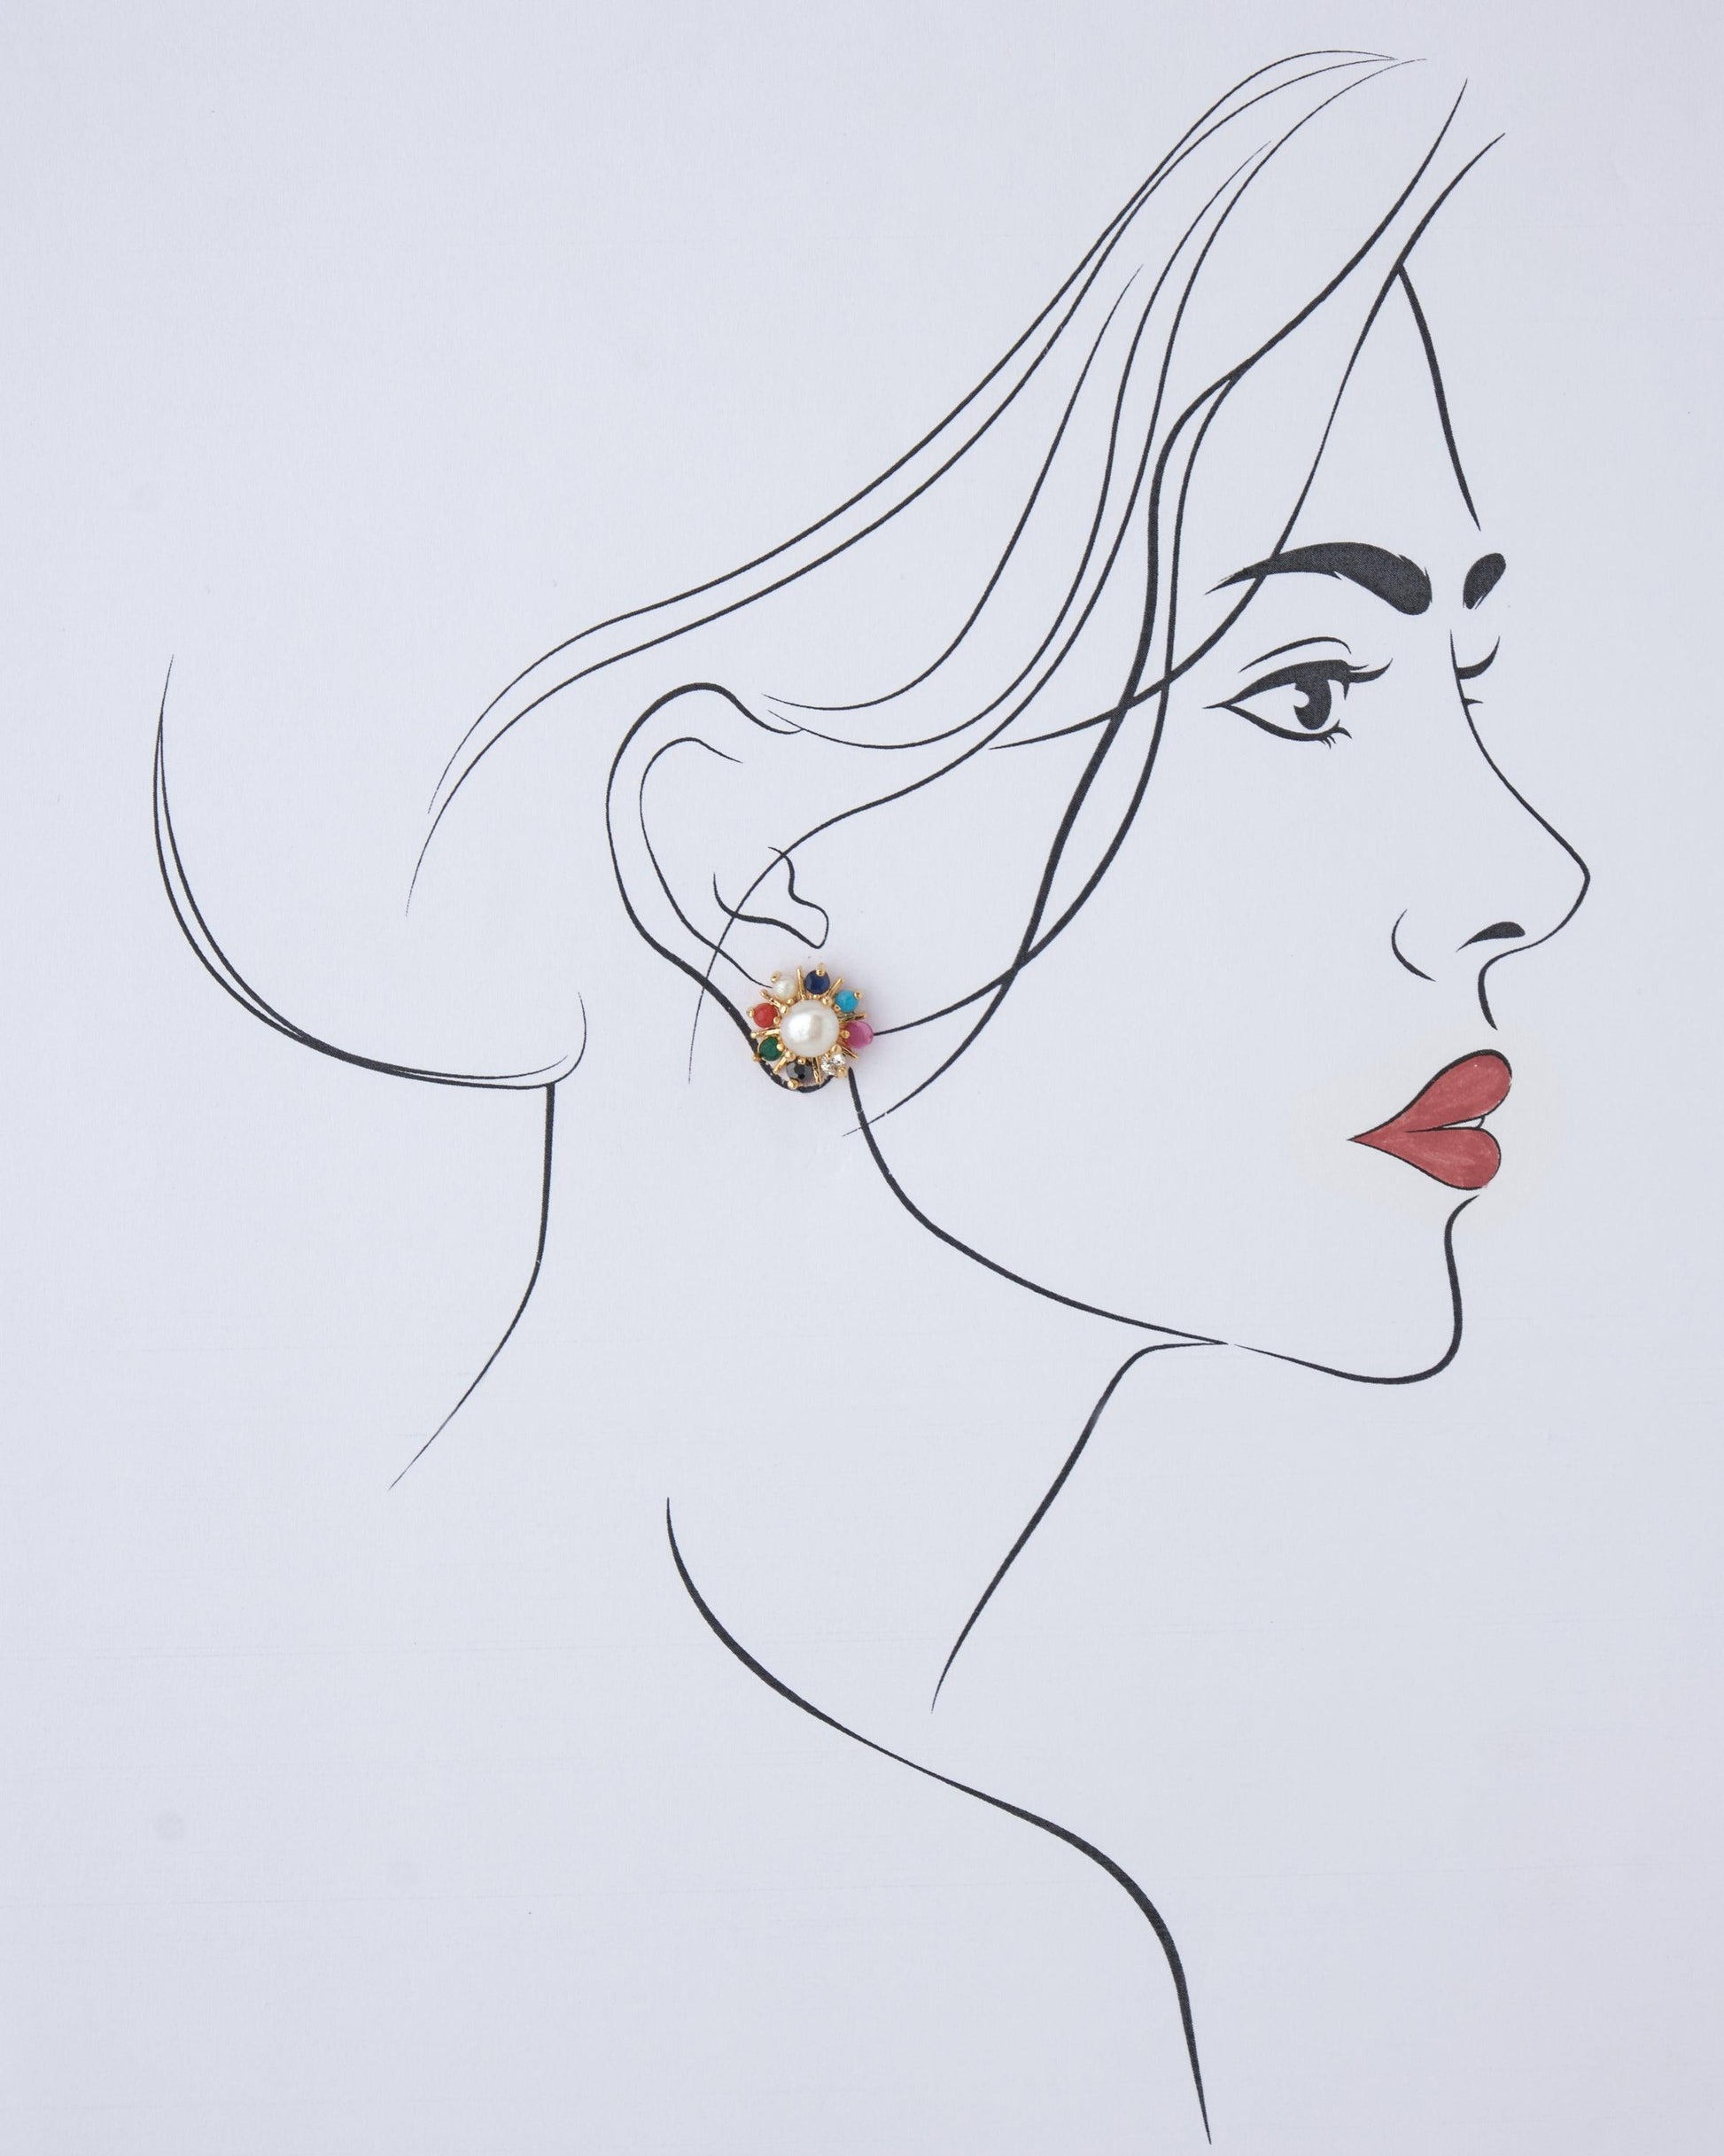 Navratan Stud Pearl Earring - Chandrani Pearls